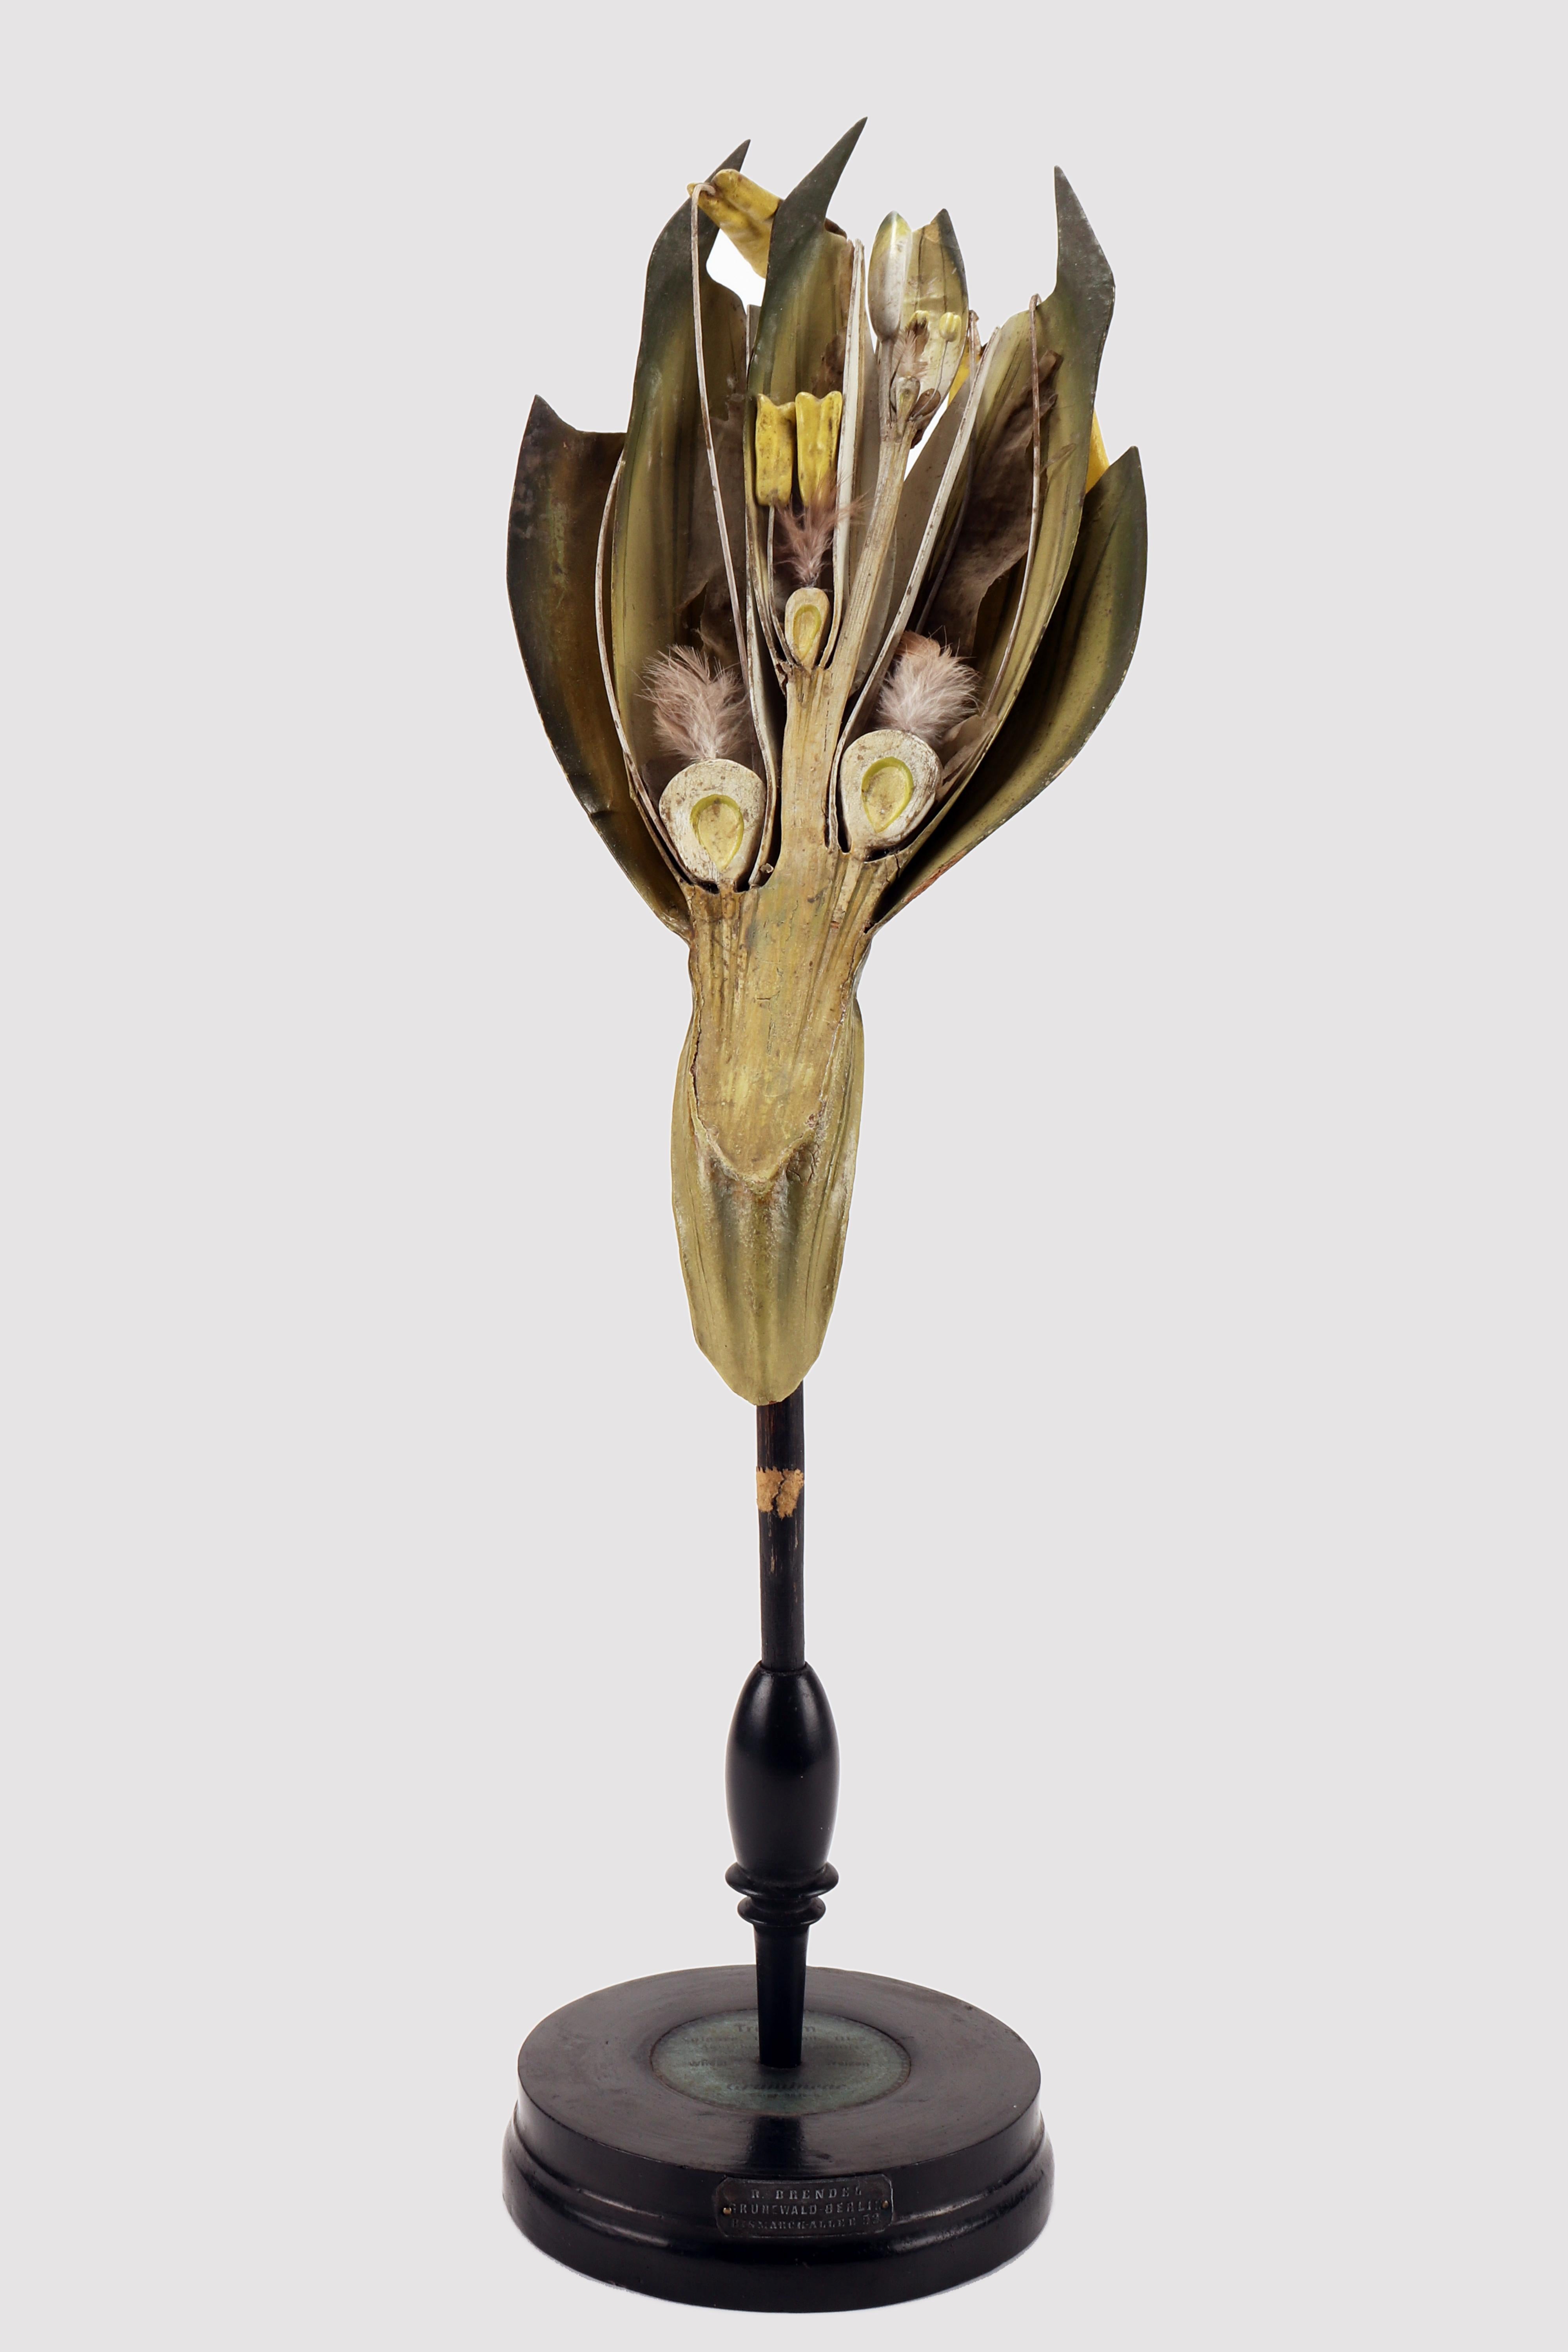 Un modèle botanique rare du Brendel, Triticum Vulgare N.11A (Gramineae). La base ronde en bois ébonisé accueille le modèle botanique qui révèle la fleur du Blé. Brendel, Berlin Allemagne, vers 1890.